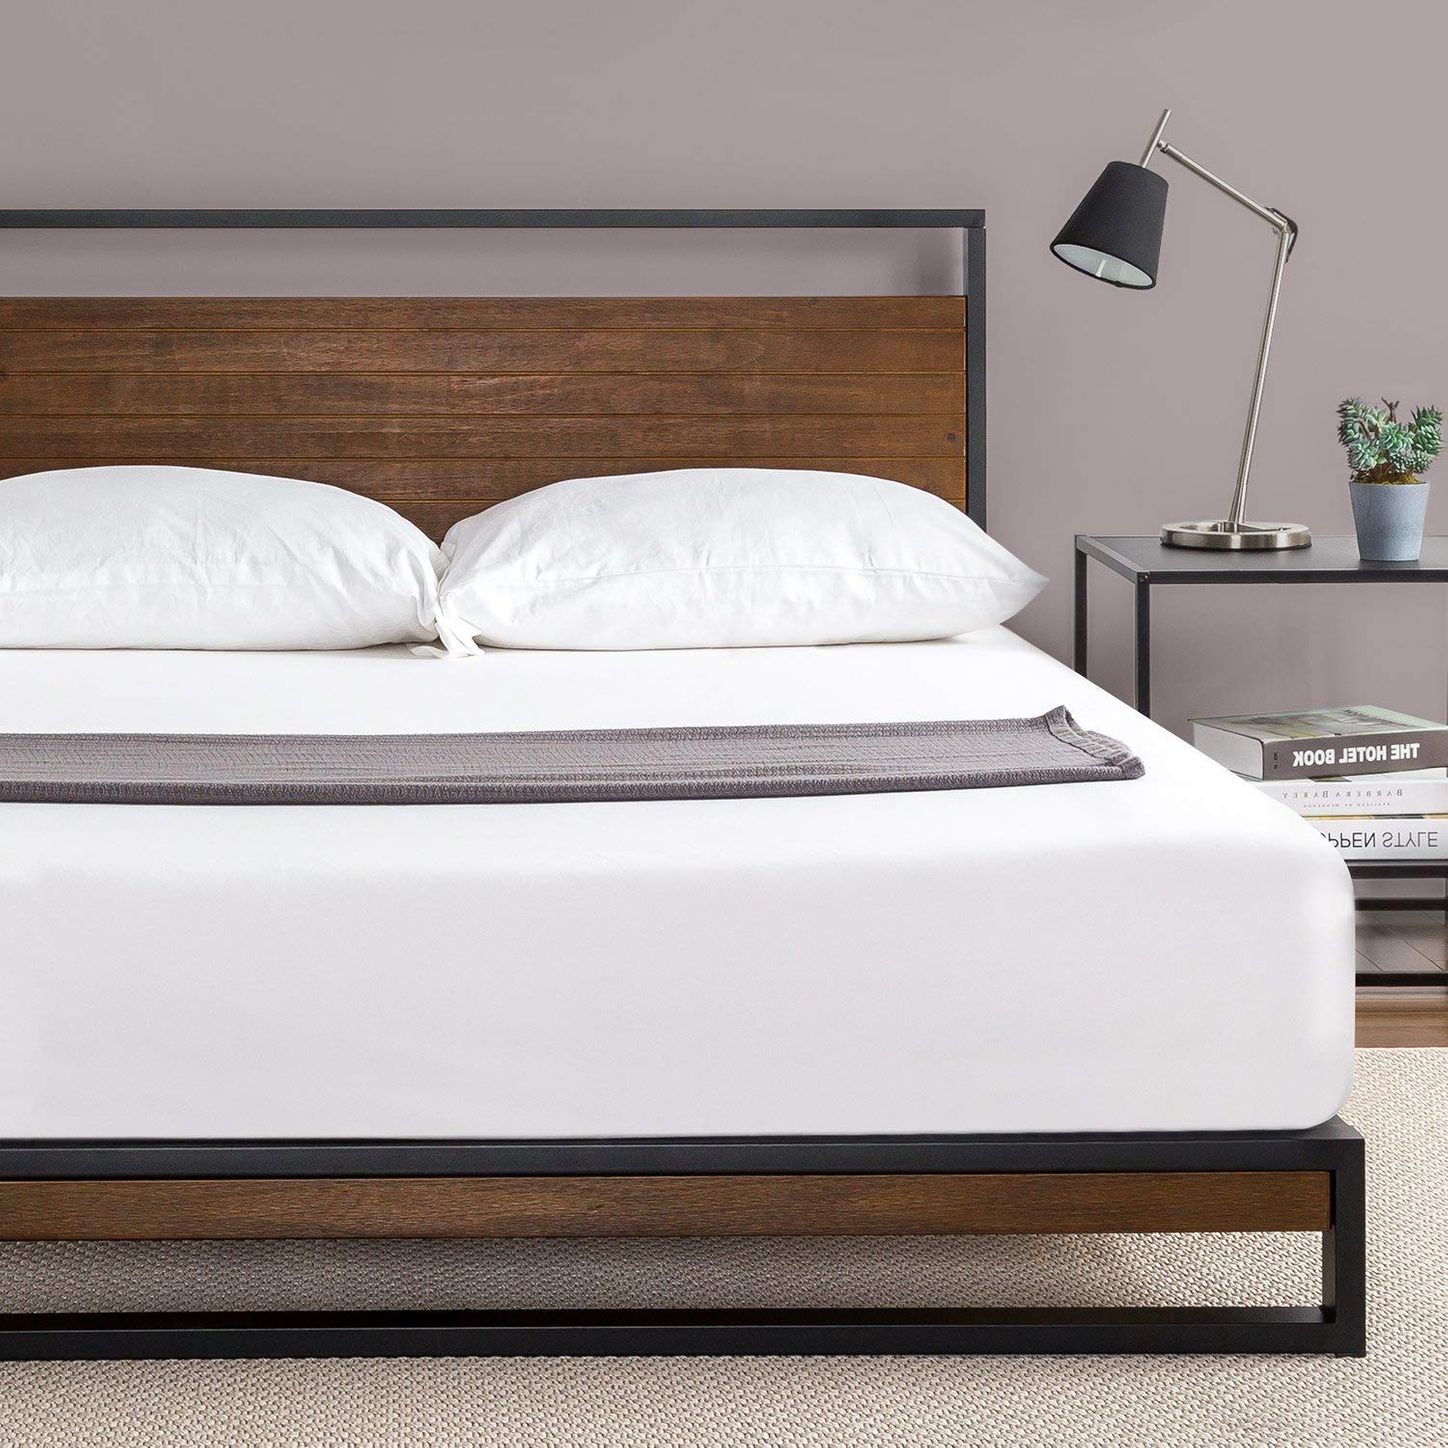 19 Best Metal Bed Frames 2020 The, King Metal Bed Frame Big Lots